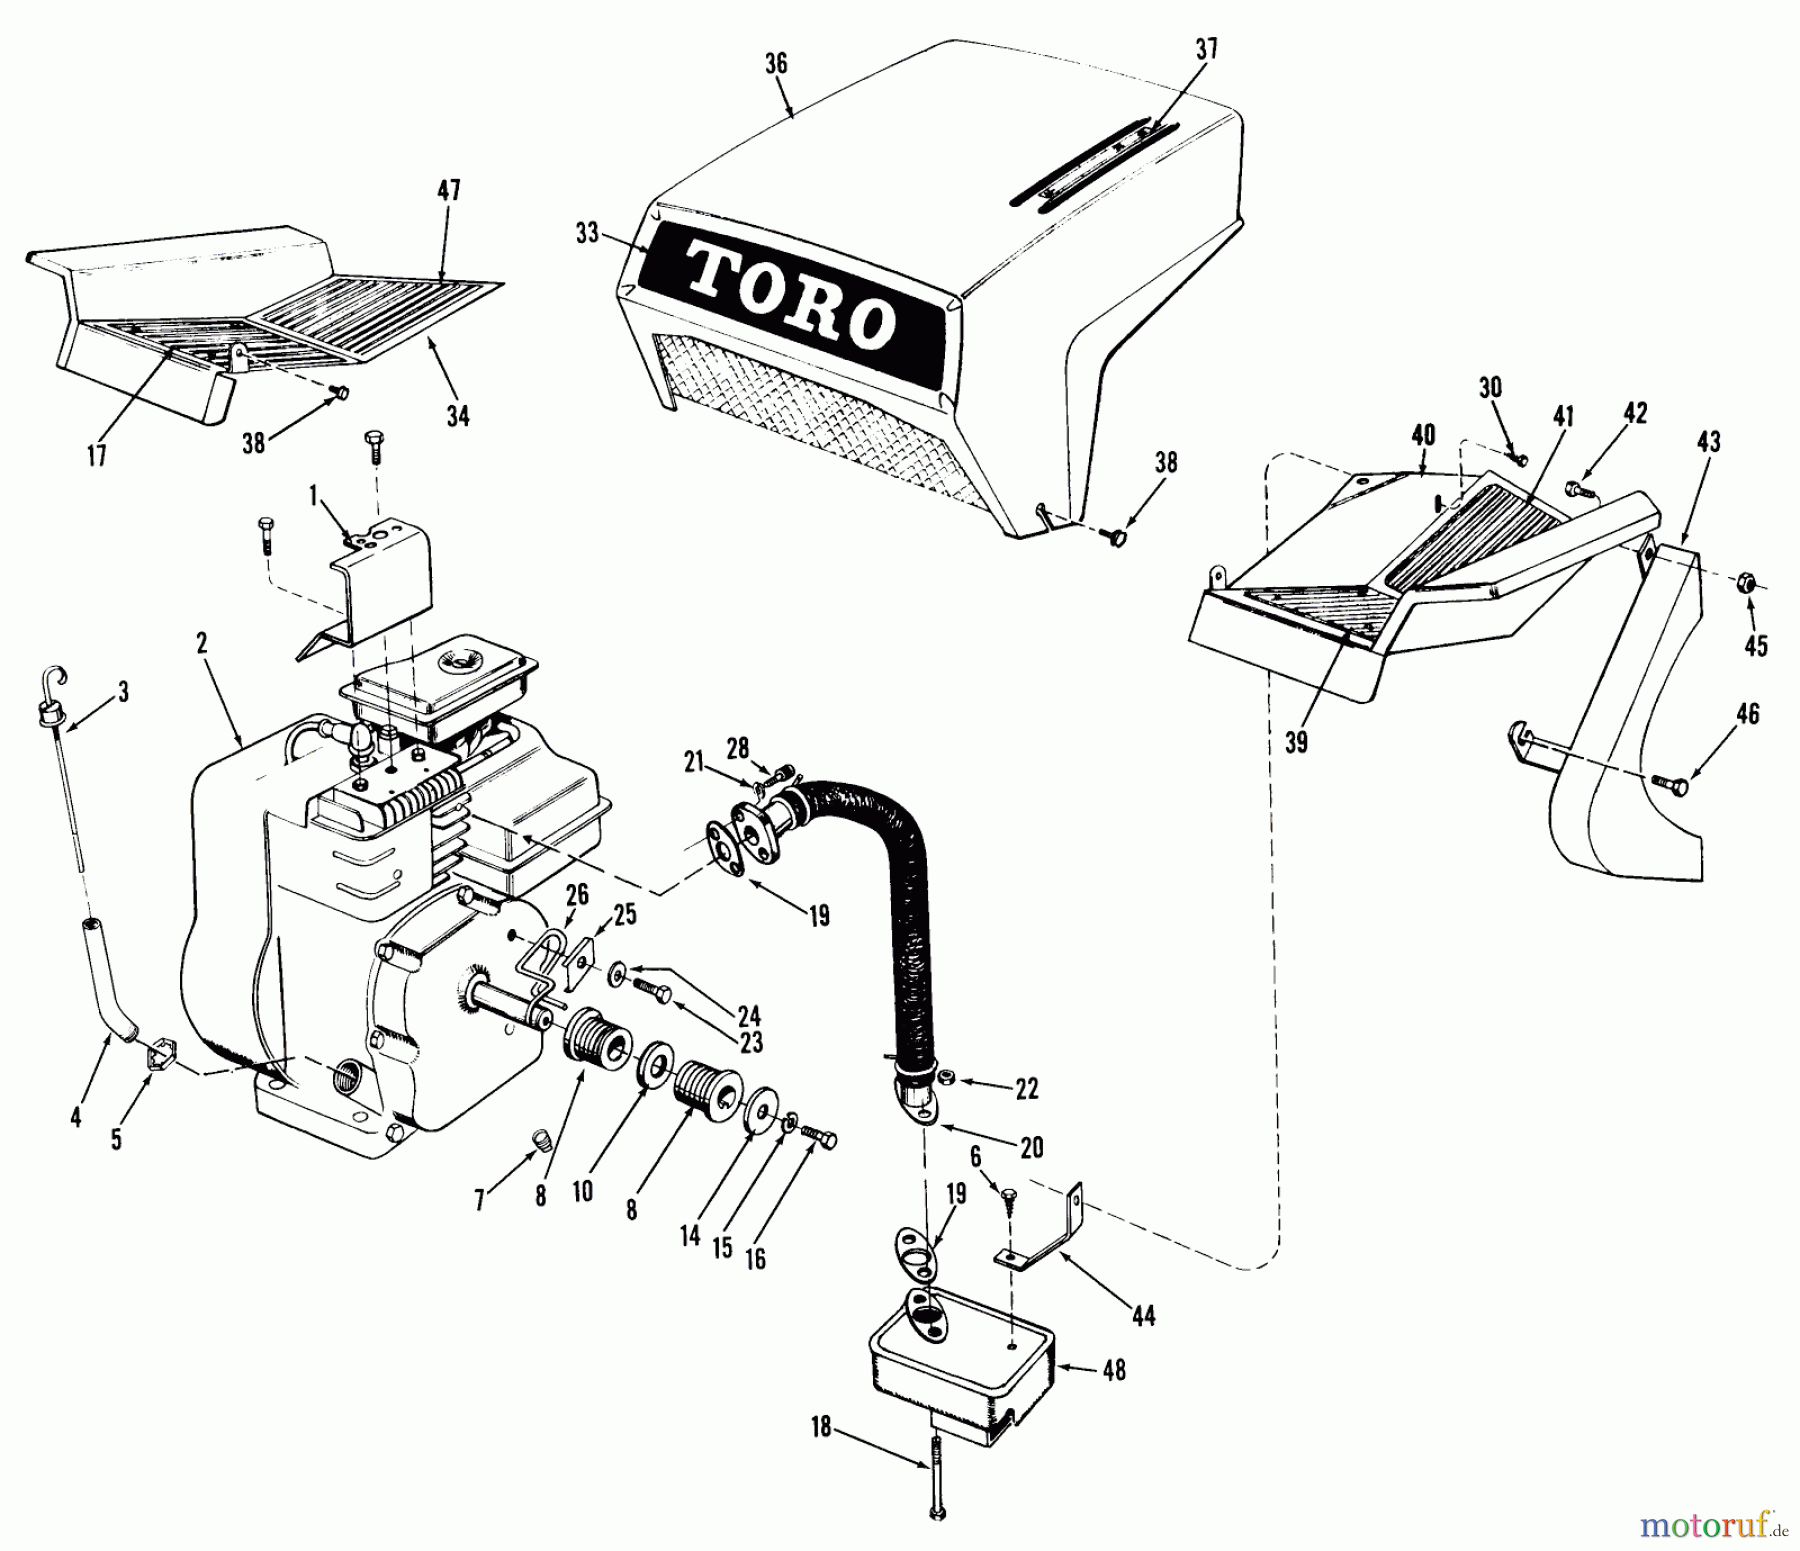  Toro Neu Mowers, Riding 03102 - Toro 58